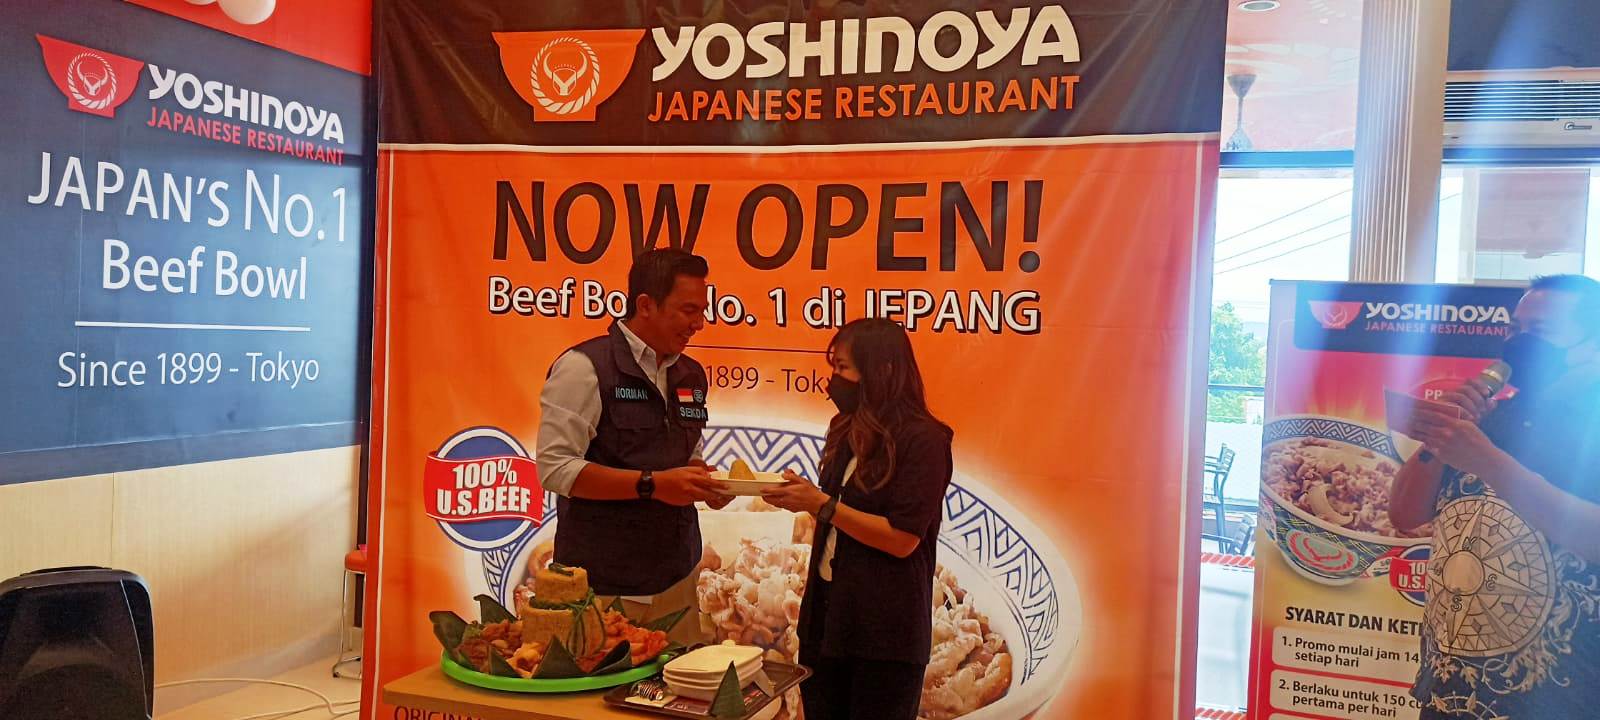 Yoshinoya Beef Bowl Kini Hadir di Purwakarta - Pasundan Ekspres